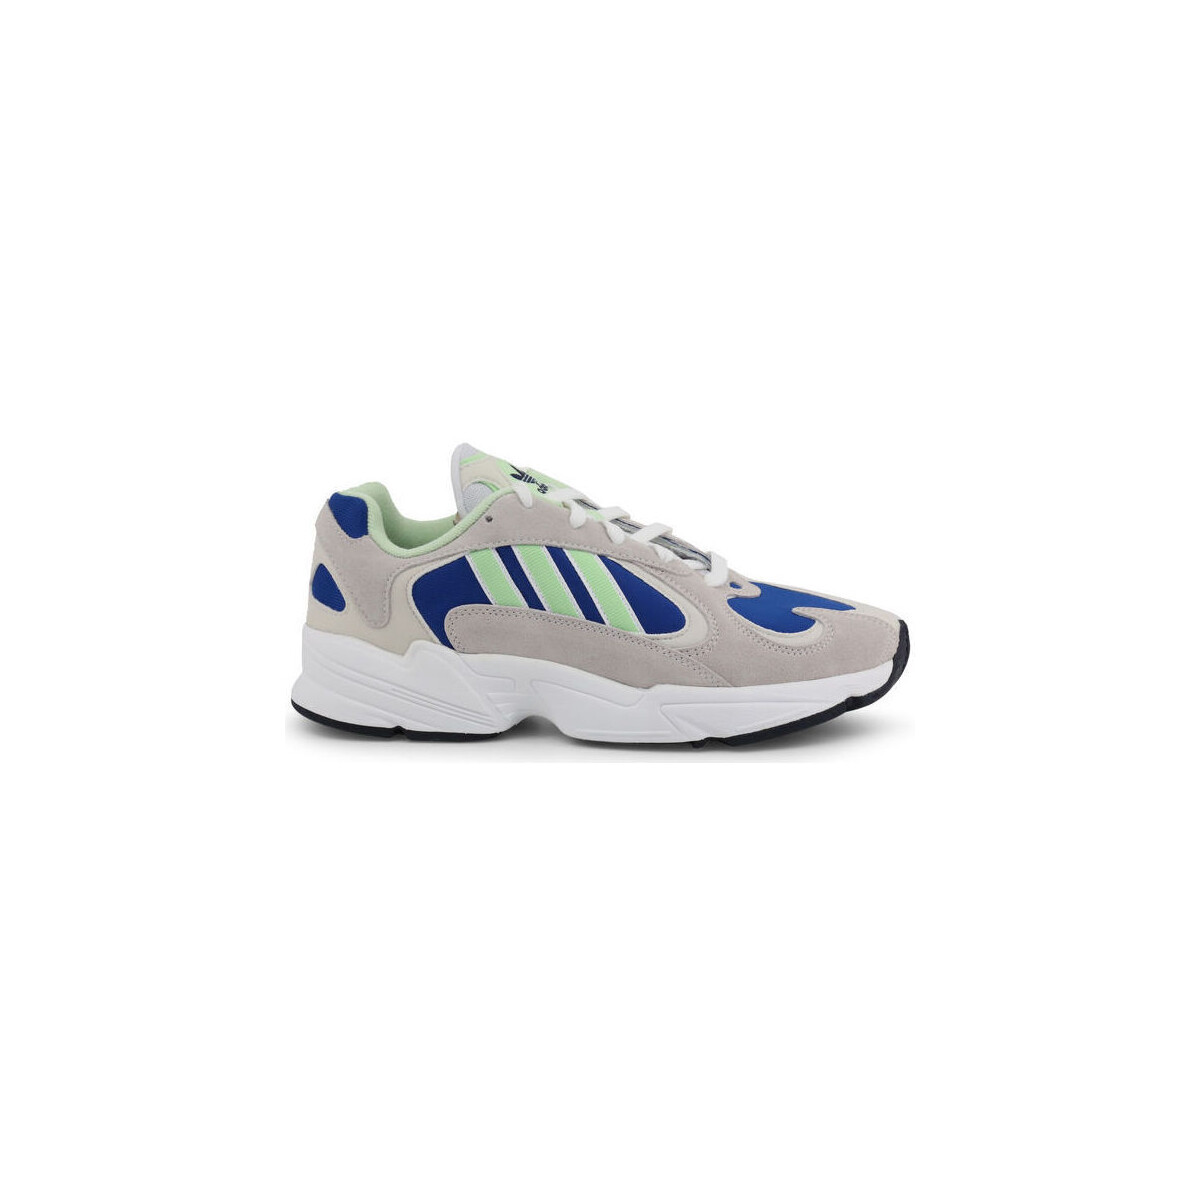 Sneakers adidas yung-1 ee5318 grey